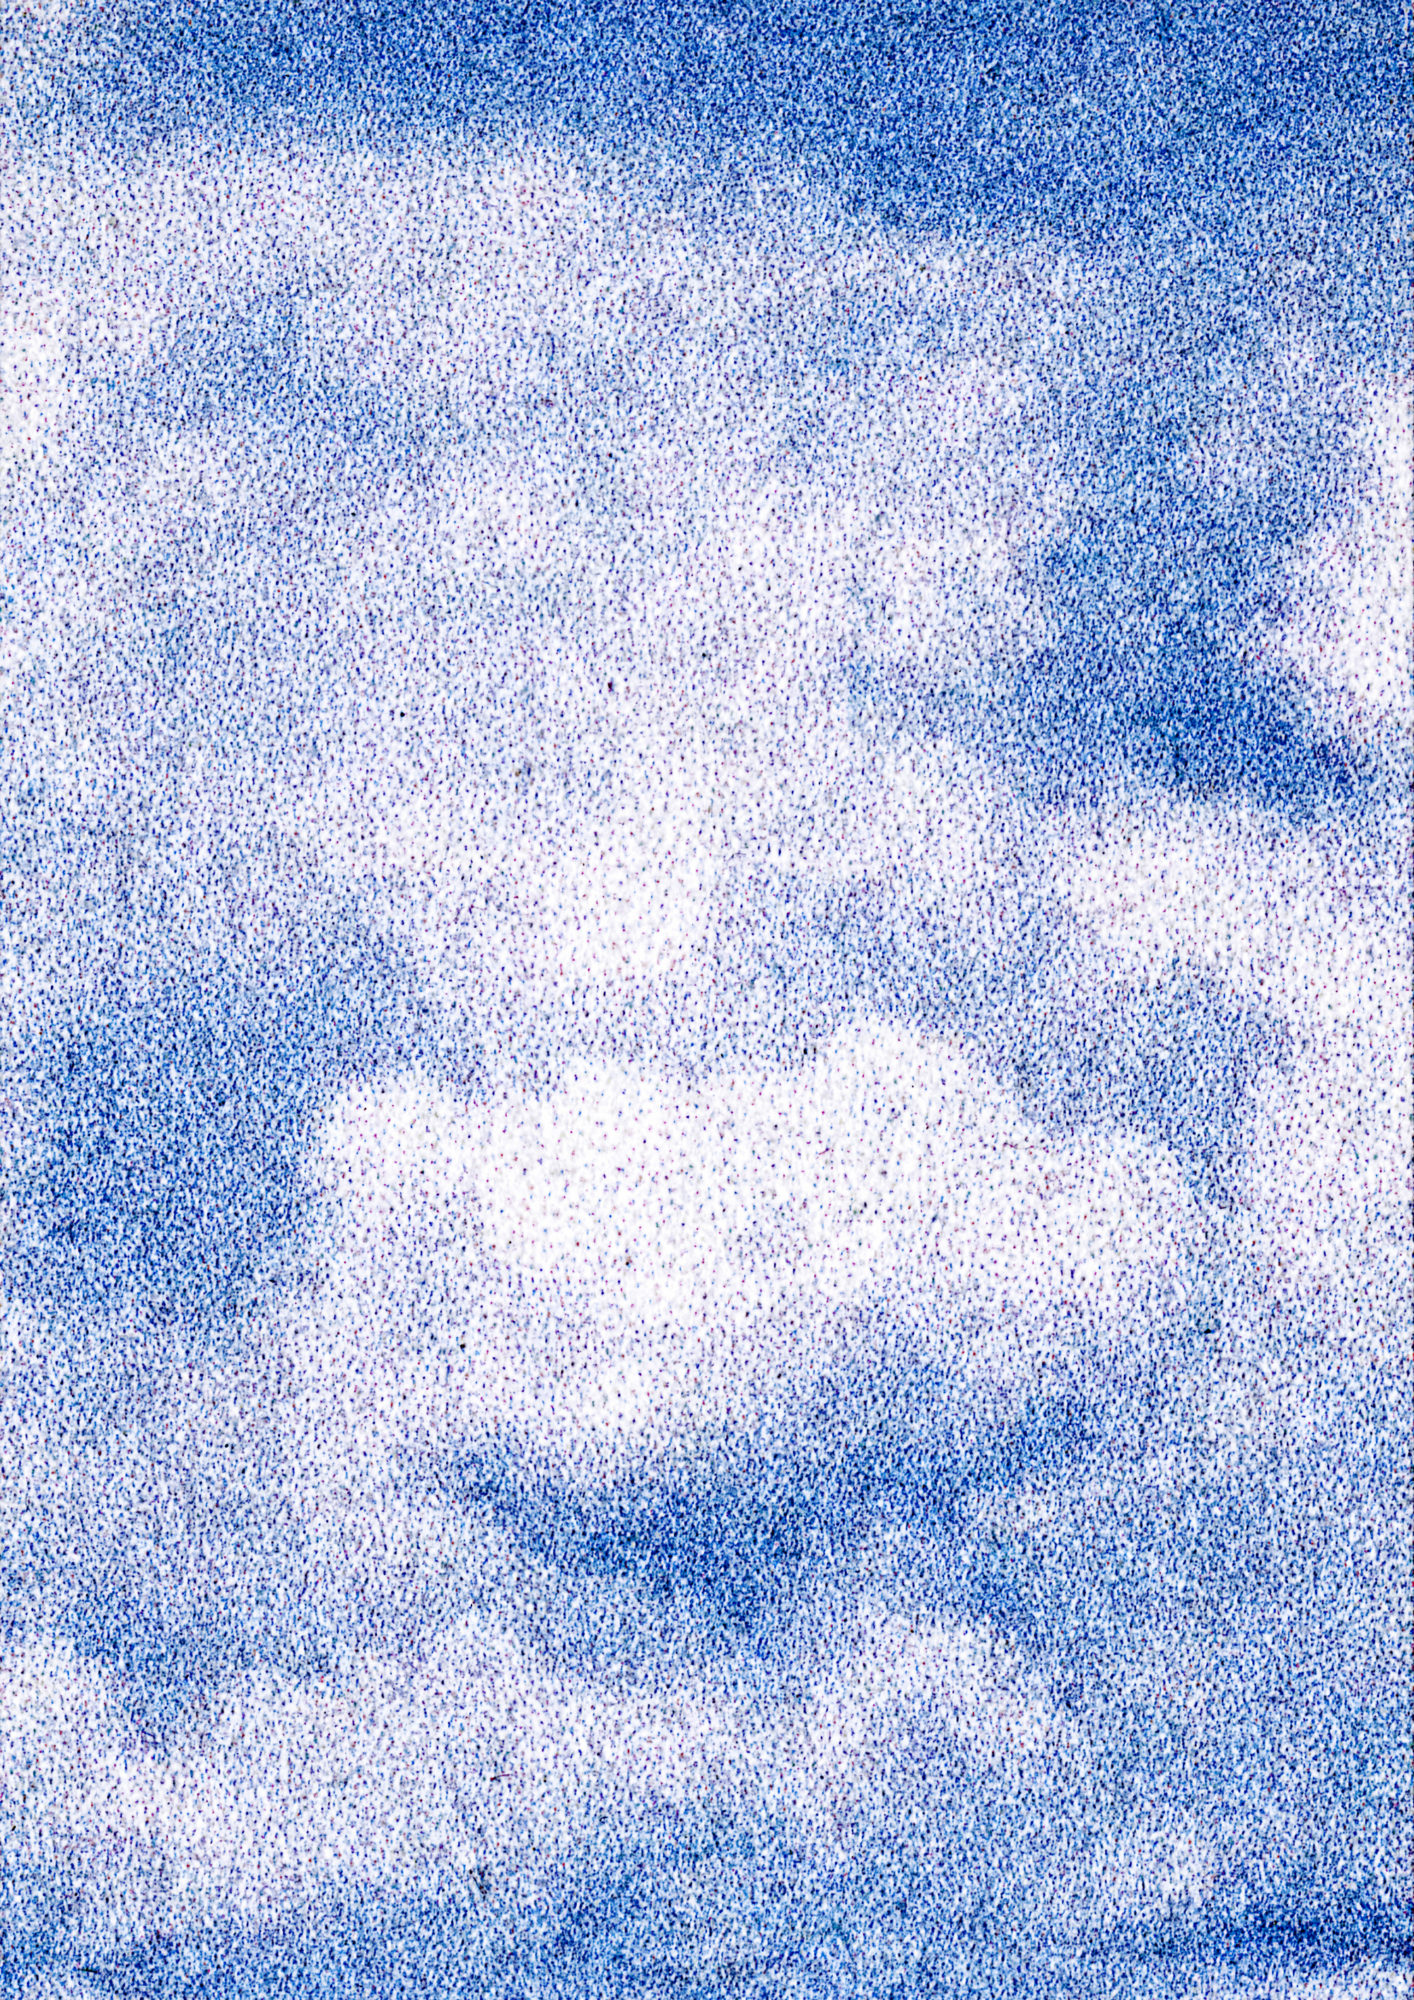 Nuvens em uma fotografia pontilhada.